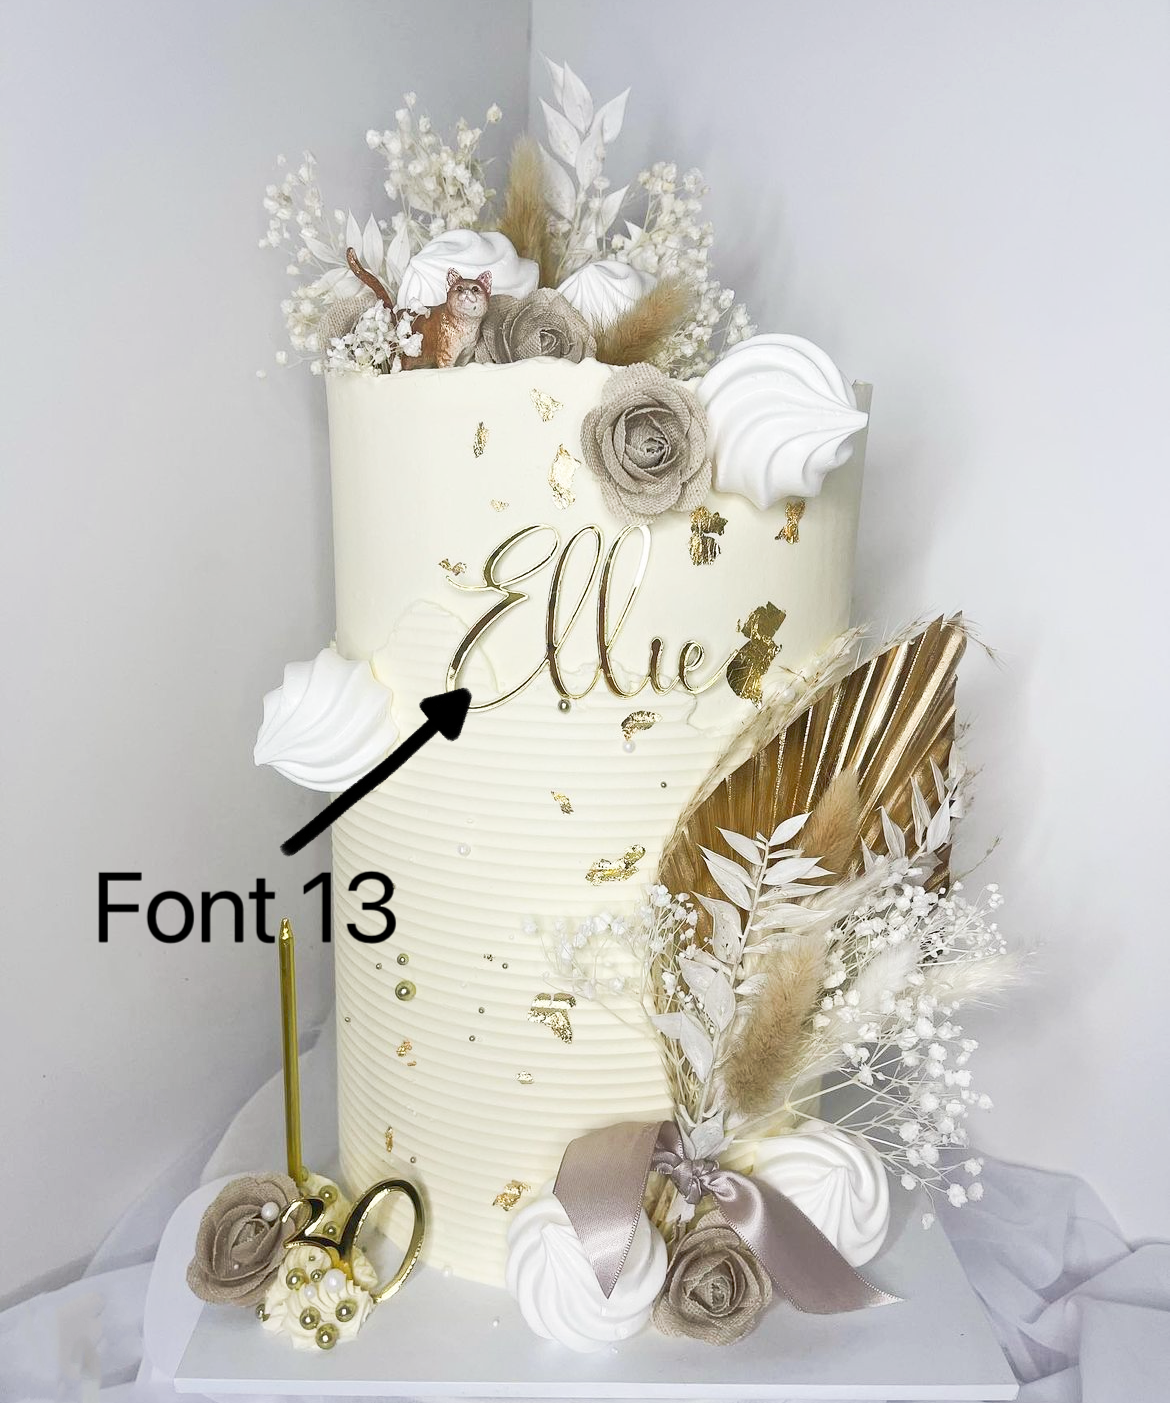 Elegance Font Name Charm - Personalised Acrylic Cake Decor